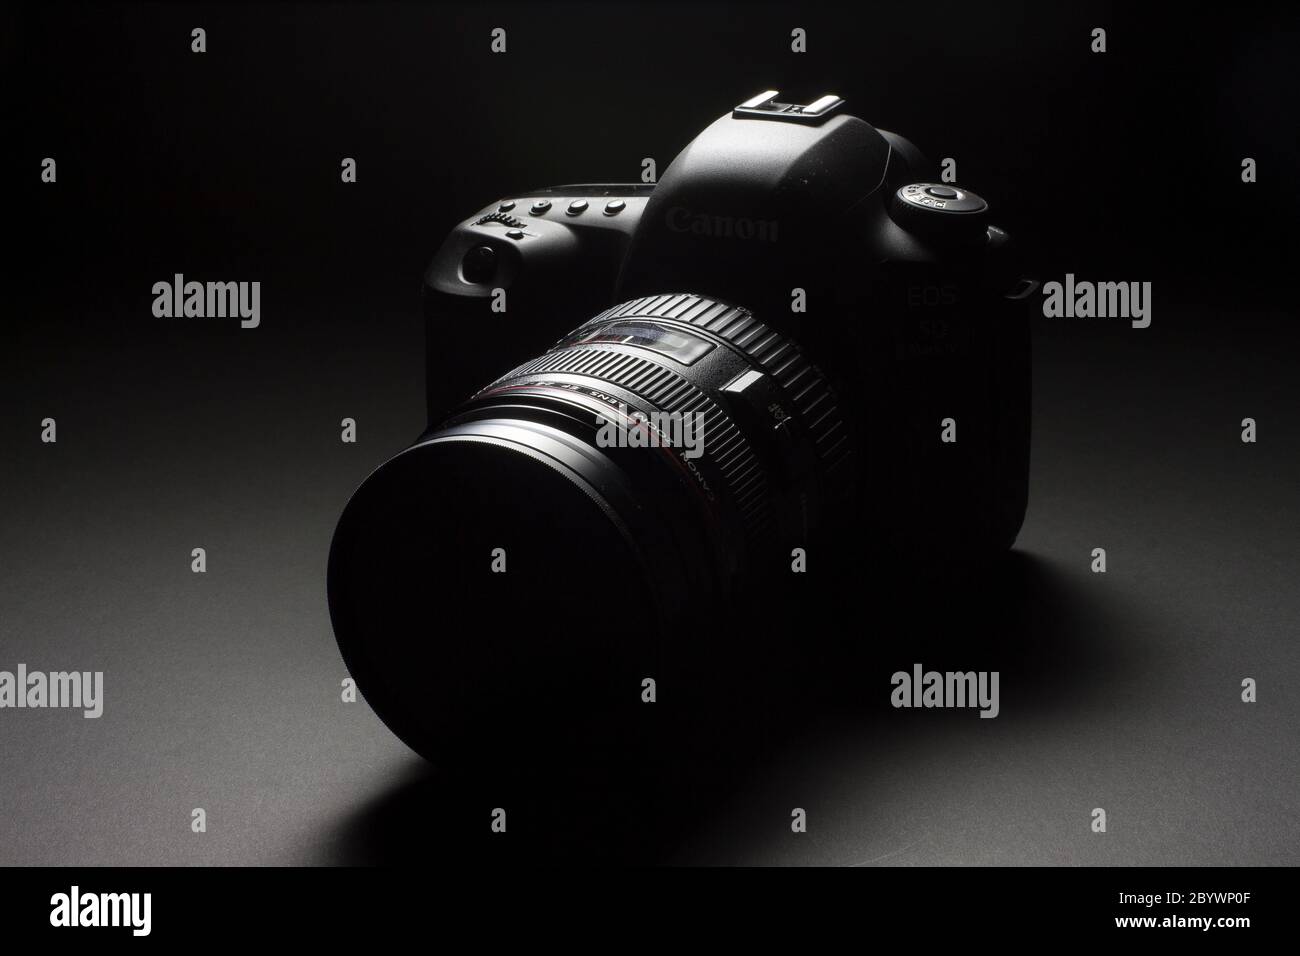 Mailand, Italien - 11. Juni 2020: Nahaufnahme einer Canon EOS 5D Mark IV mit EF 24-70mm 1:2.8 L USM Objektiv, die auf schwarzem Hintergrund aufliegt. Stockfoto